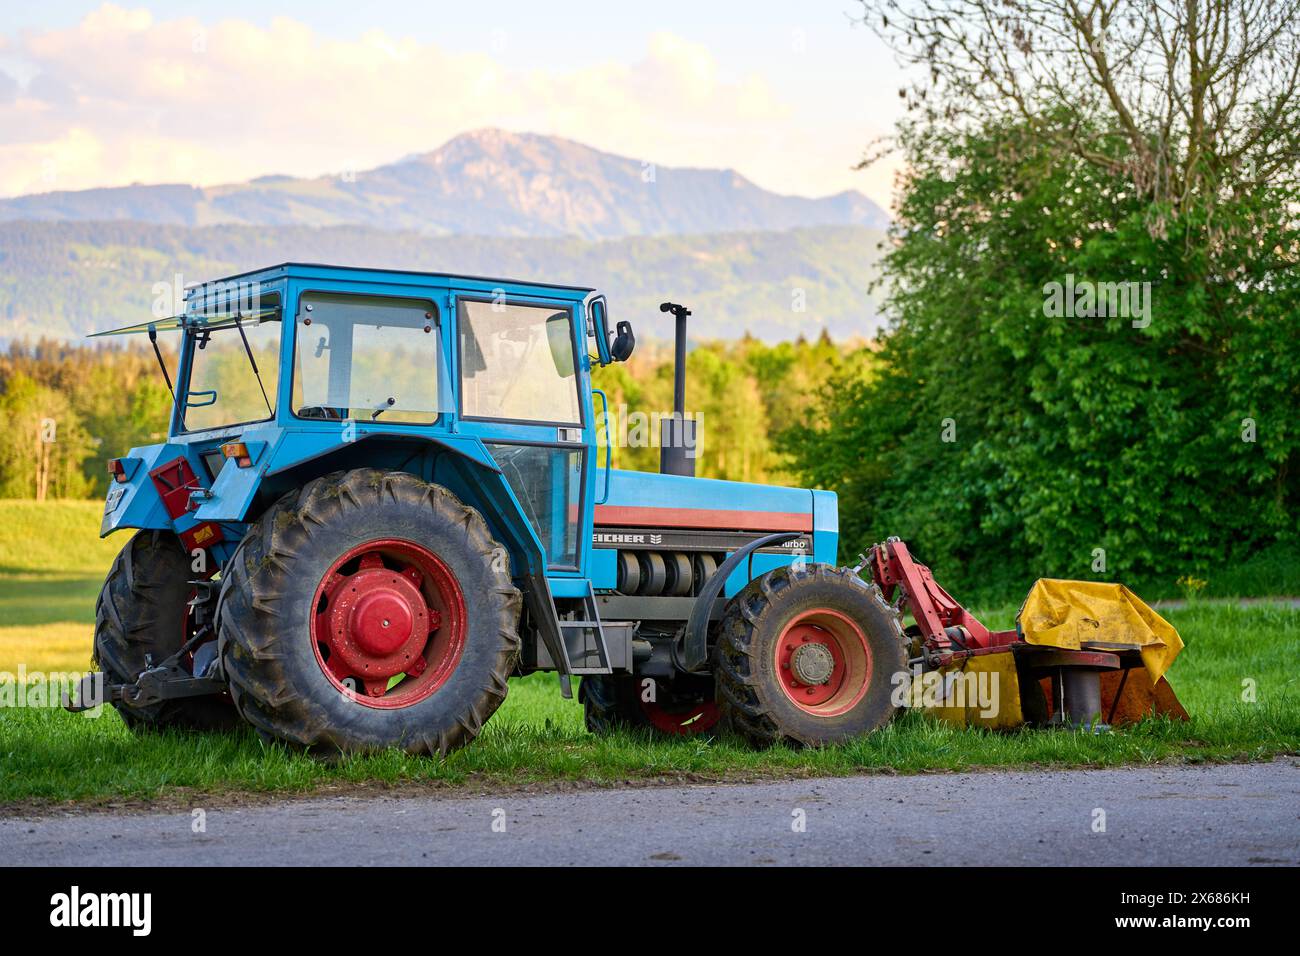 Bavaria, Germany - 11 May 2024: Eicher 3072 Turbo agricultural tractor on a farm in Bavaria *** Eicher 3072 Turbo landwirtschaftlicher Traktor auf einem Bauernhof in Bayern Stock Photo